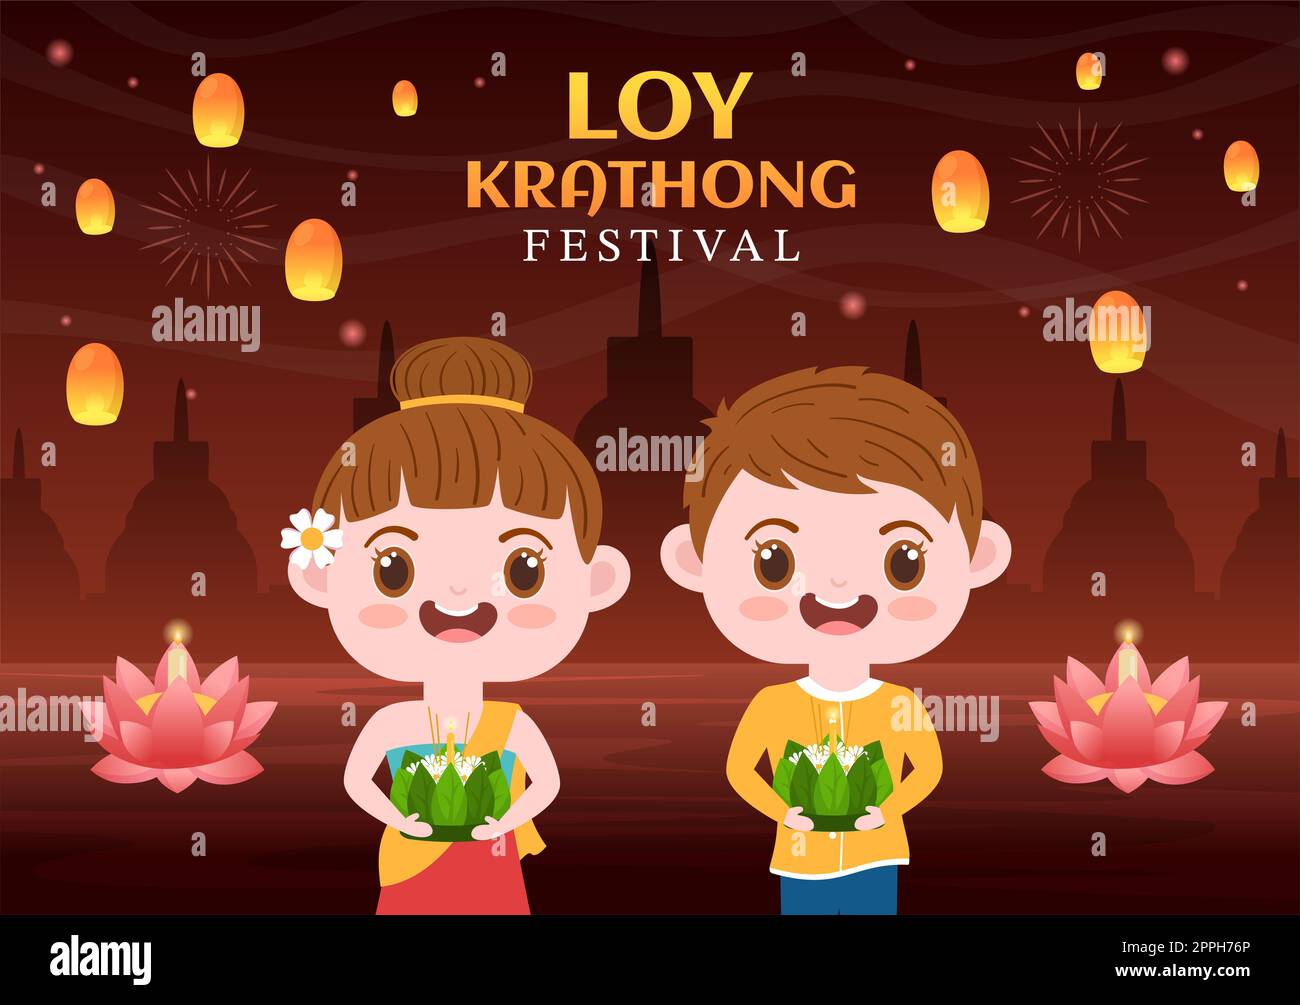 Loy Krathong Festival Celebration en Thaïlande modèle dessin main dessin dessin dessin de dessin animé à plat avec lanternes et Krathongs flottant sur l'eau Design Banque D'Images